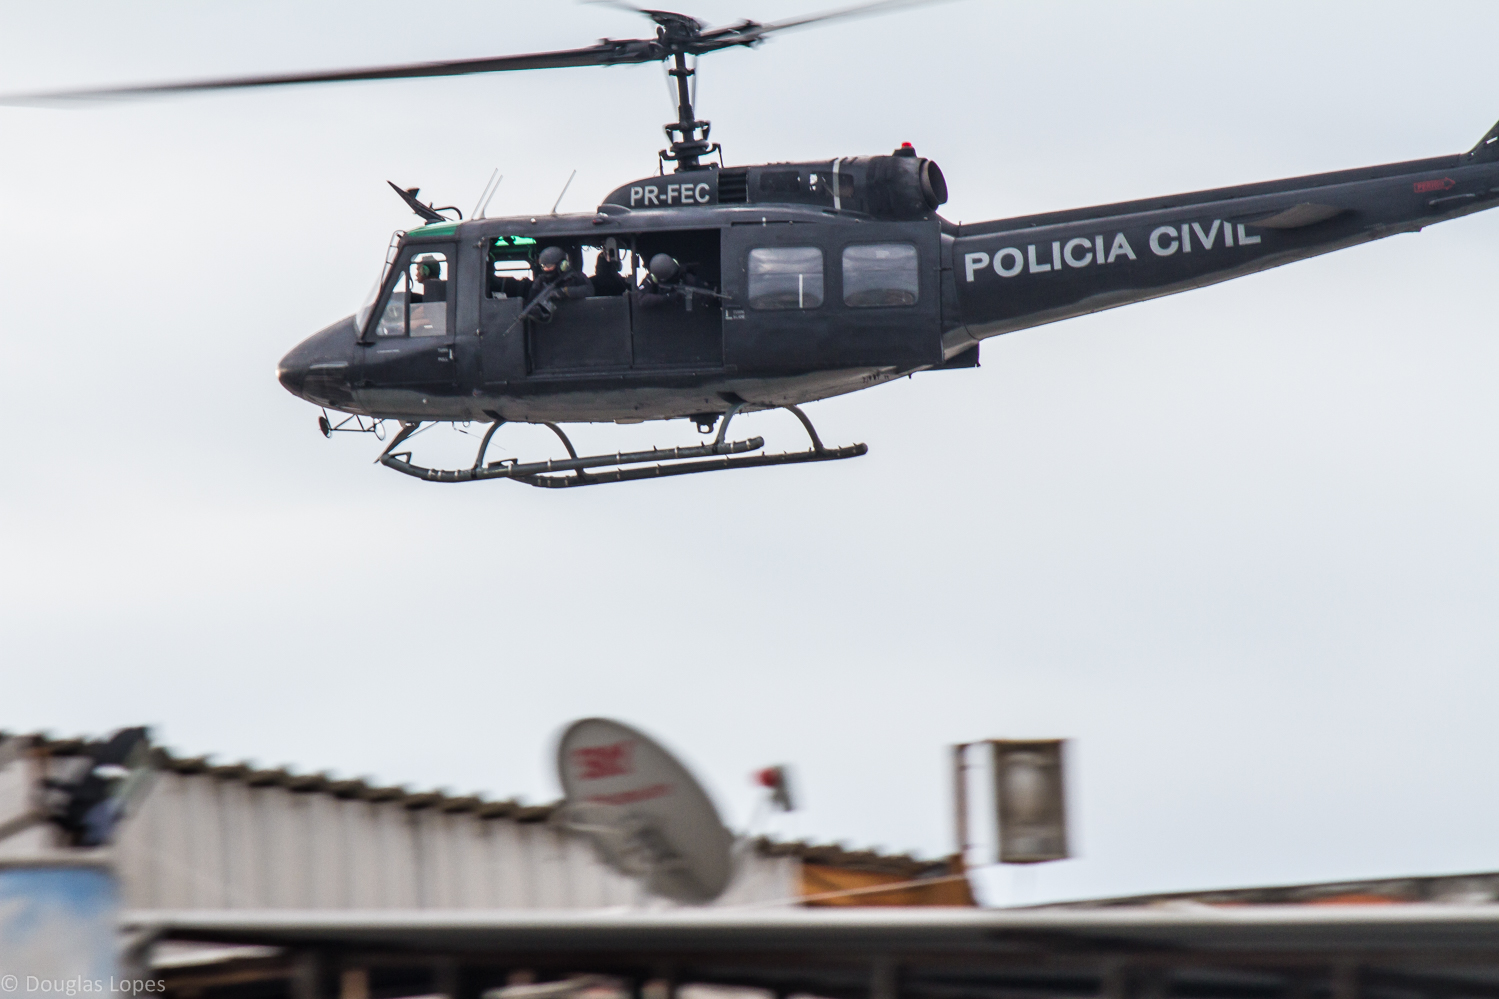  Desembargadora autoriza uso de helicópteros em operações policiais